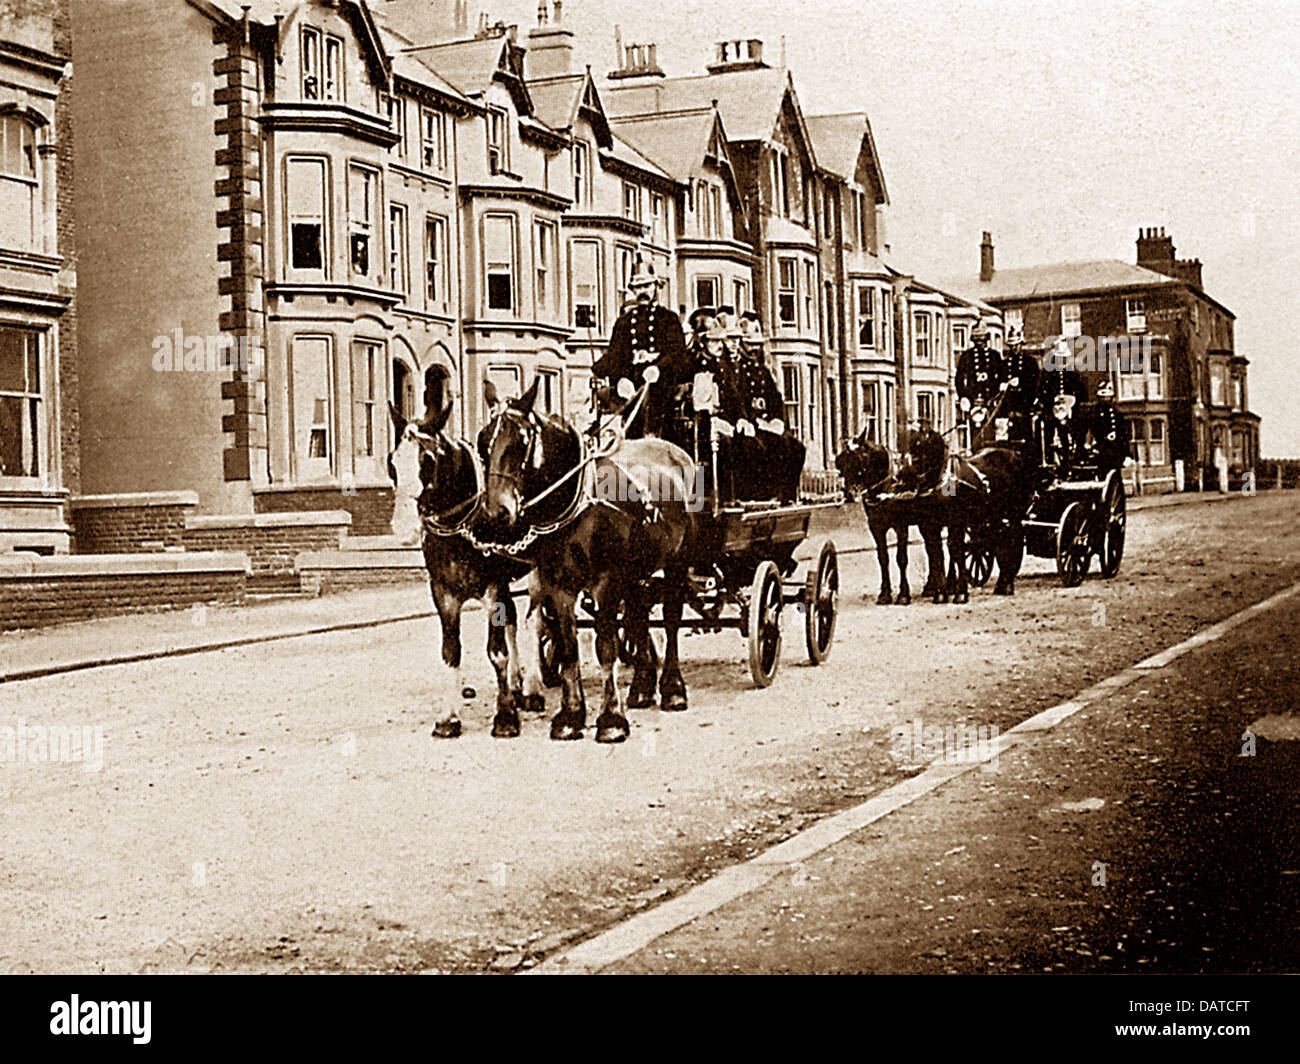 Blackpool Fire Brigade Victorian period Stock Photo